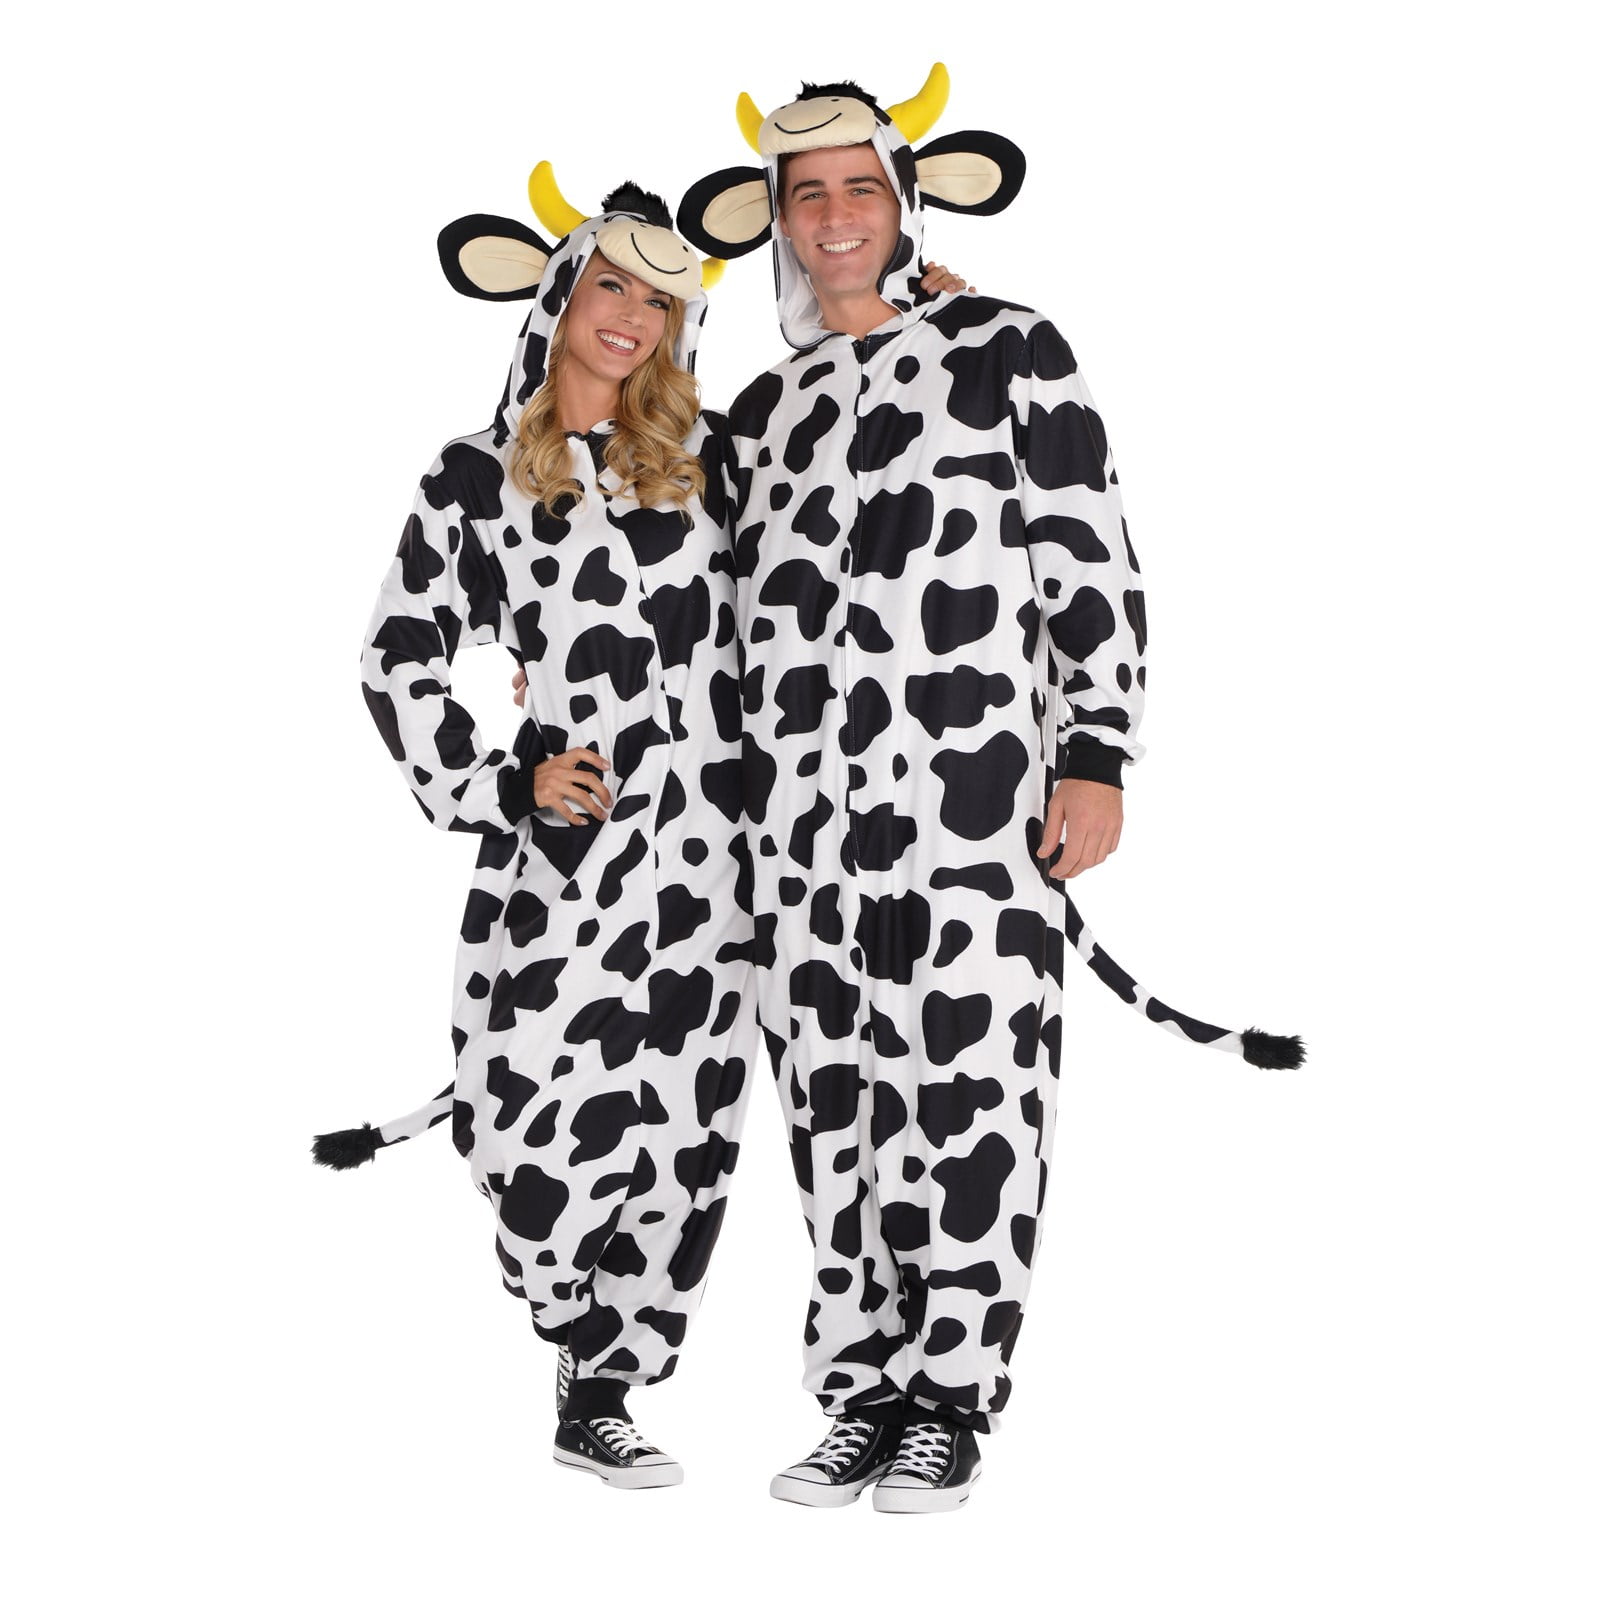 Adult Cow Onesie Costume - Walmart.com